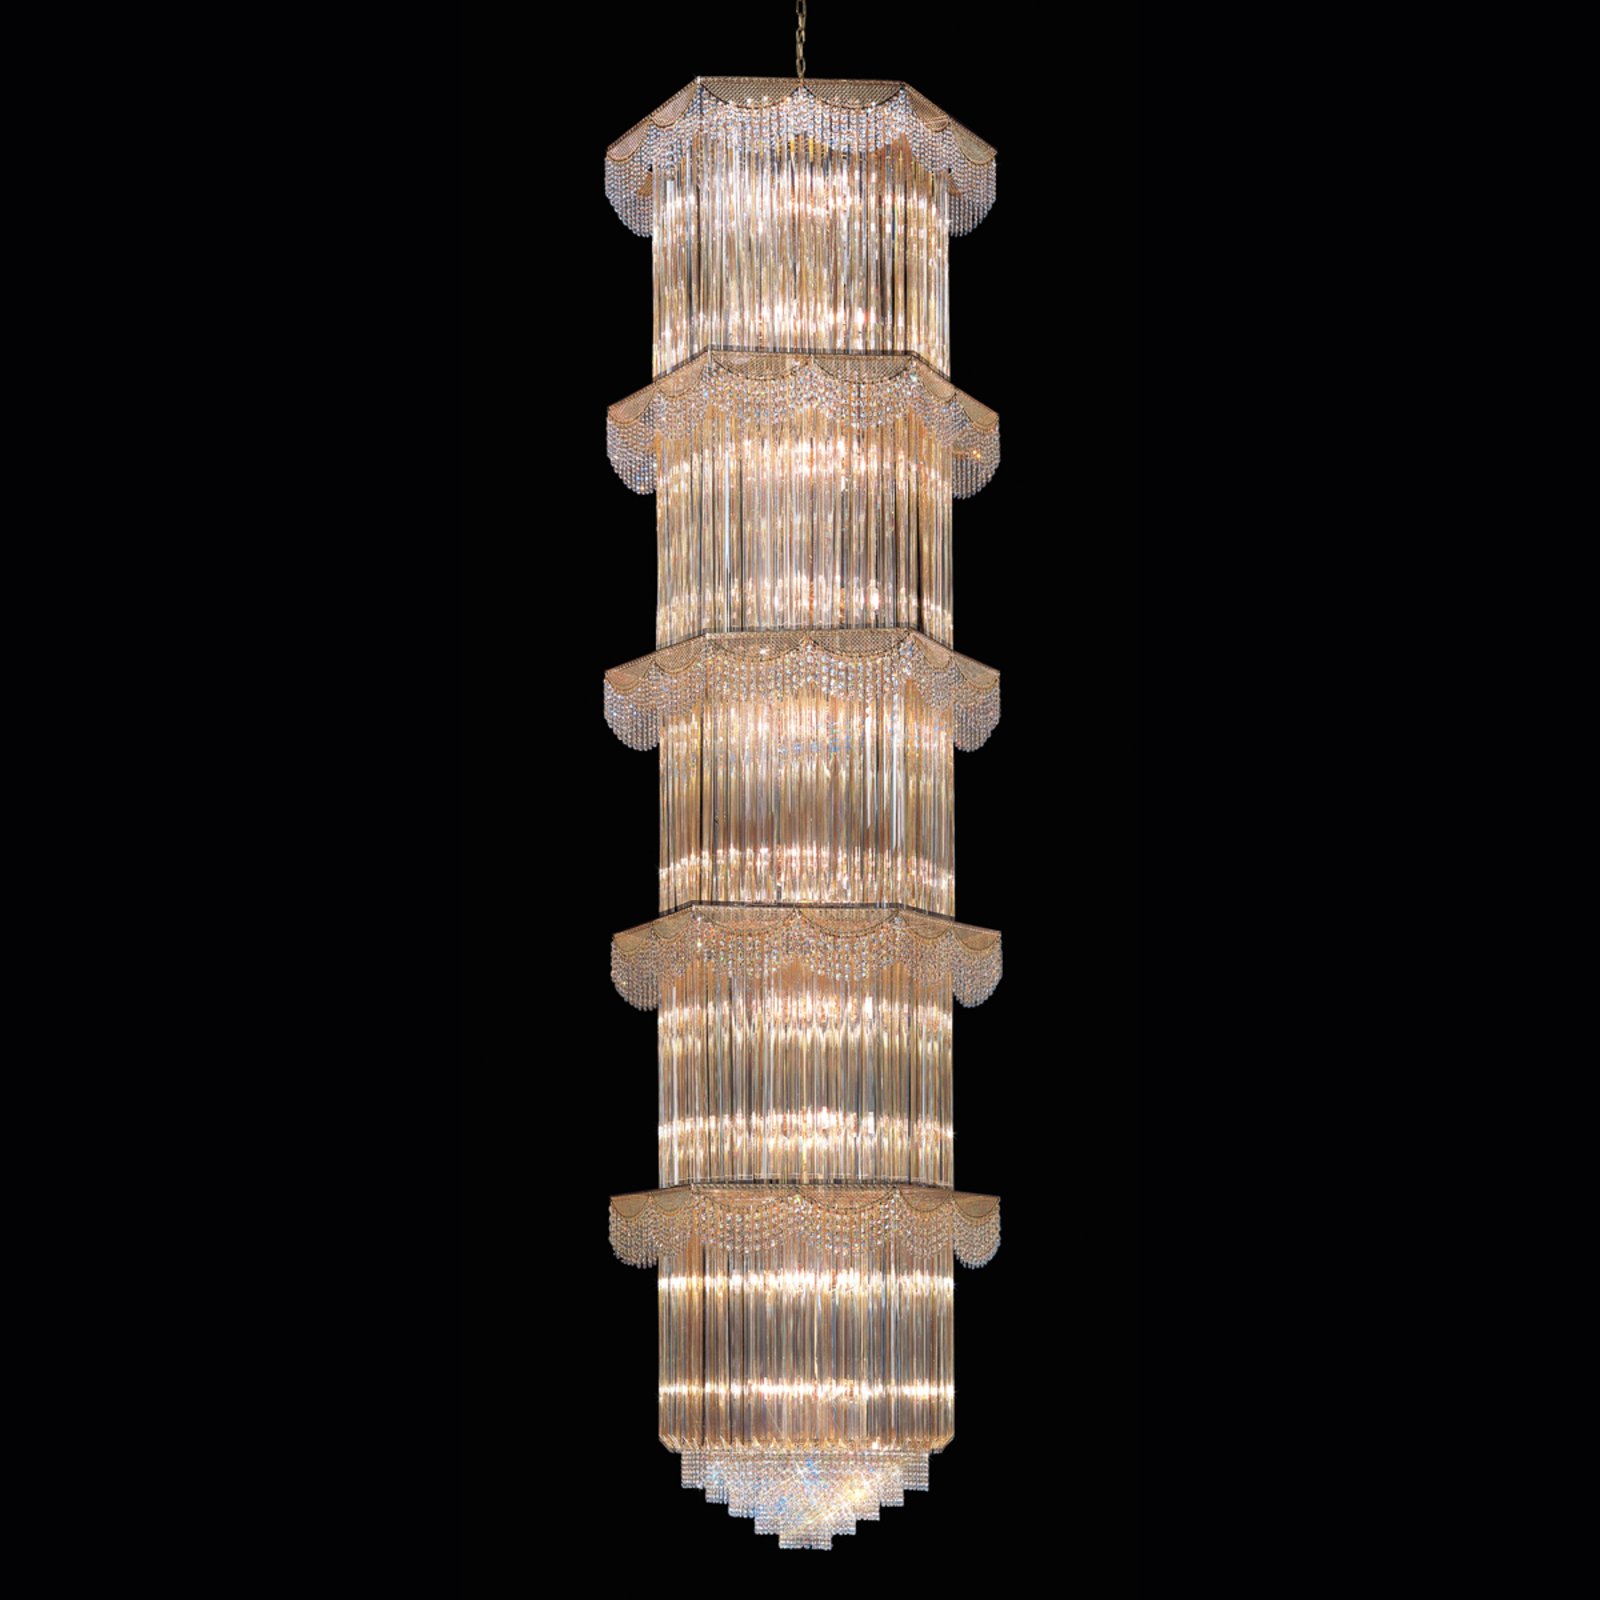 Bursztynowa lampa wisząca CRISTALLI o wys. 340 cm